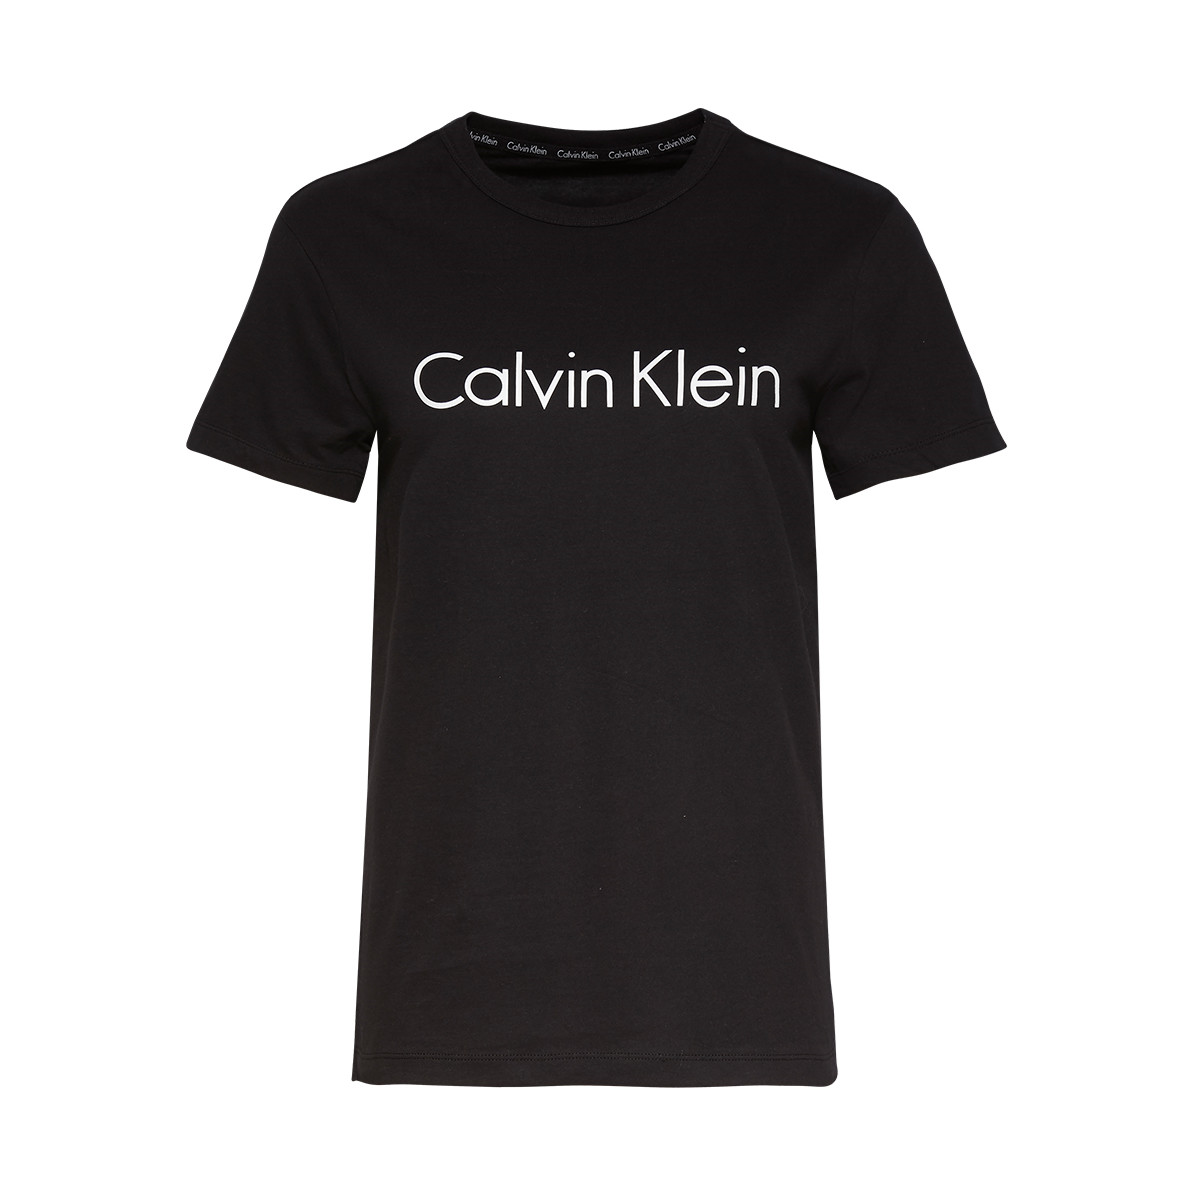 CALVIN KLEIN LINGERI T-SHIRT S6105 001 (Black, S)